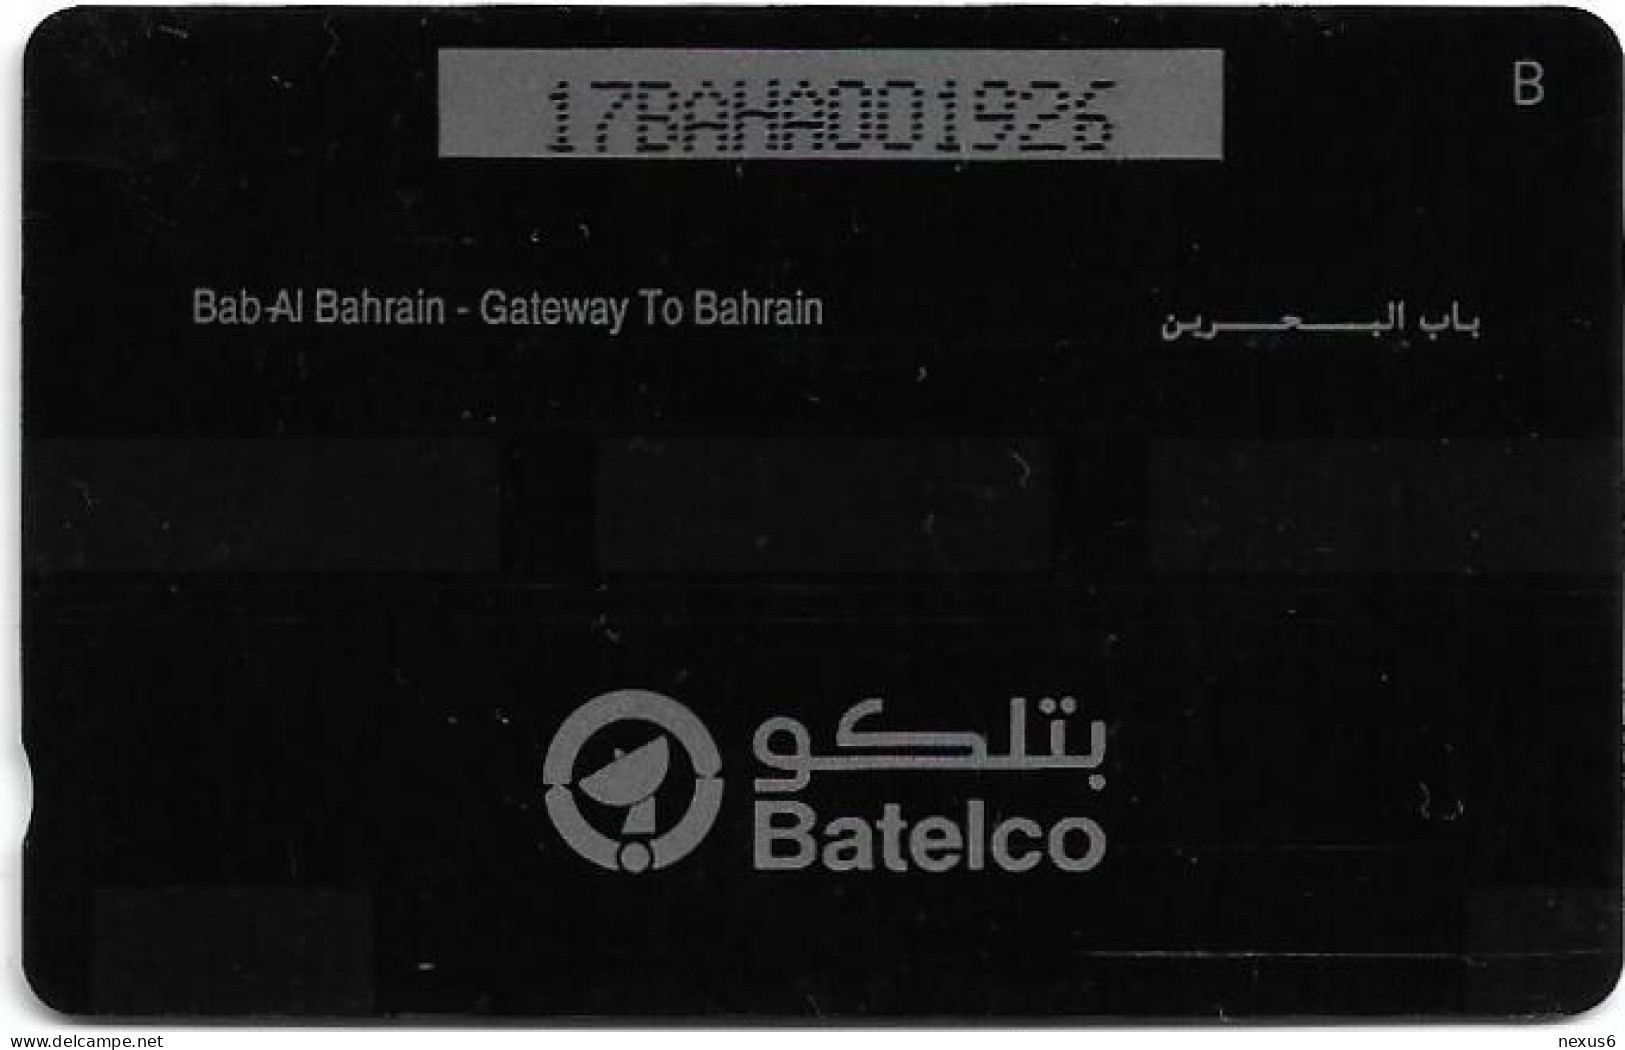 Bahrain - Batelco (GPT) - Gateway To Bahrain - 17BAHA - 1993, 130.000ex, Used - Bahrein